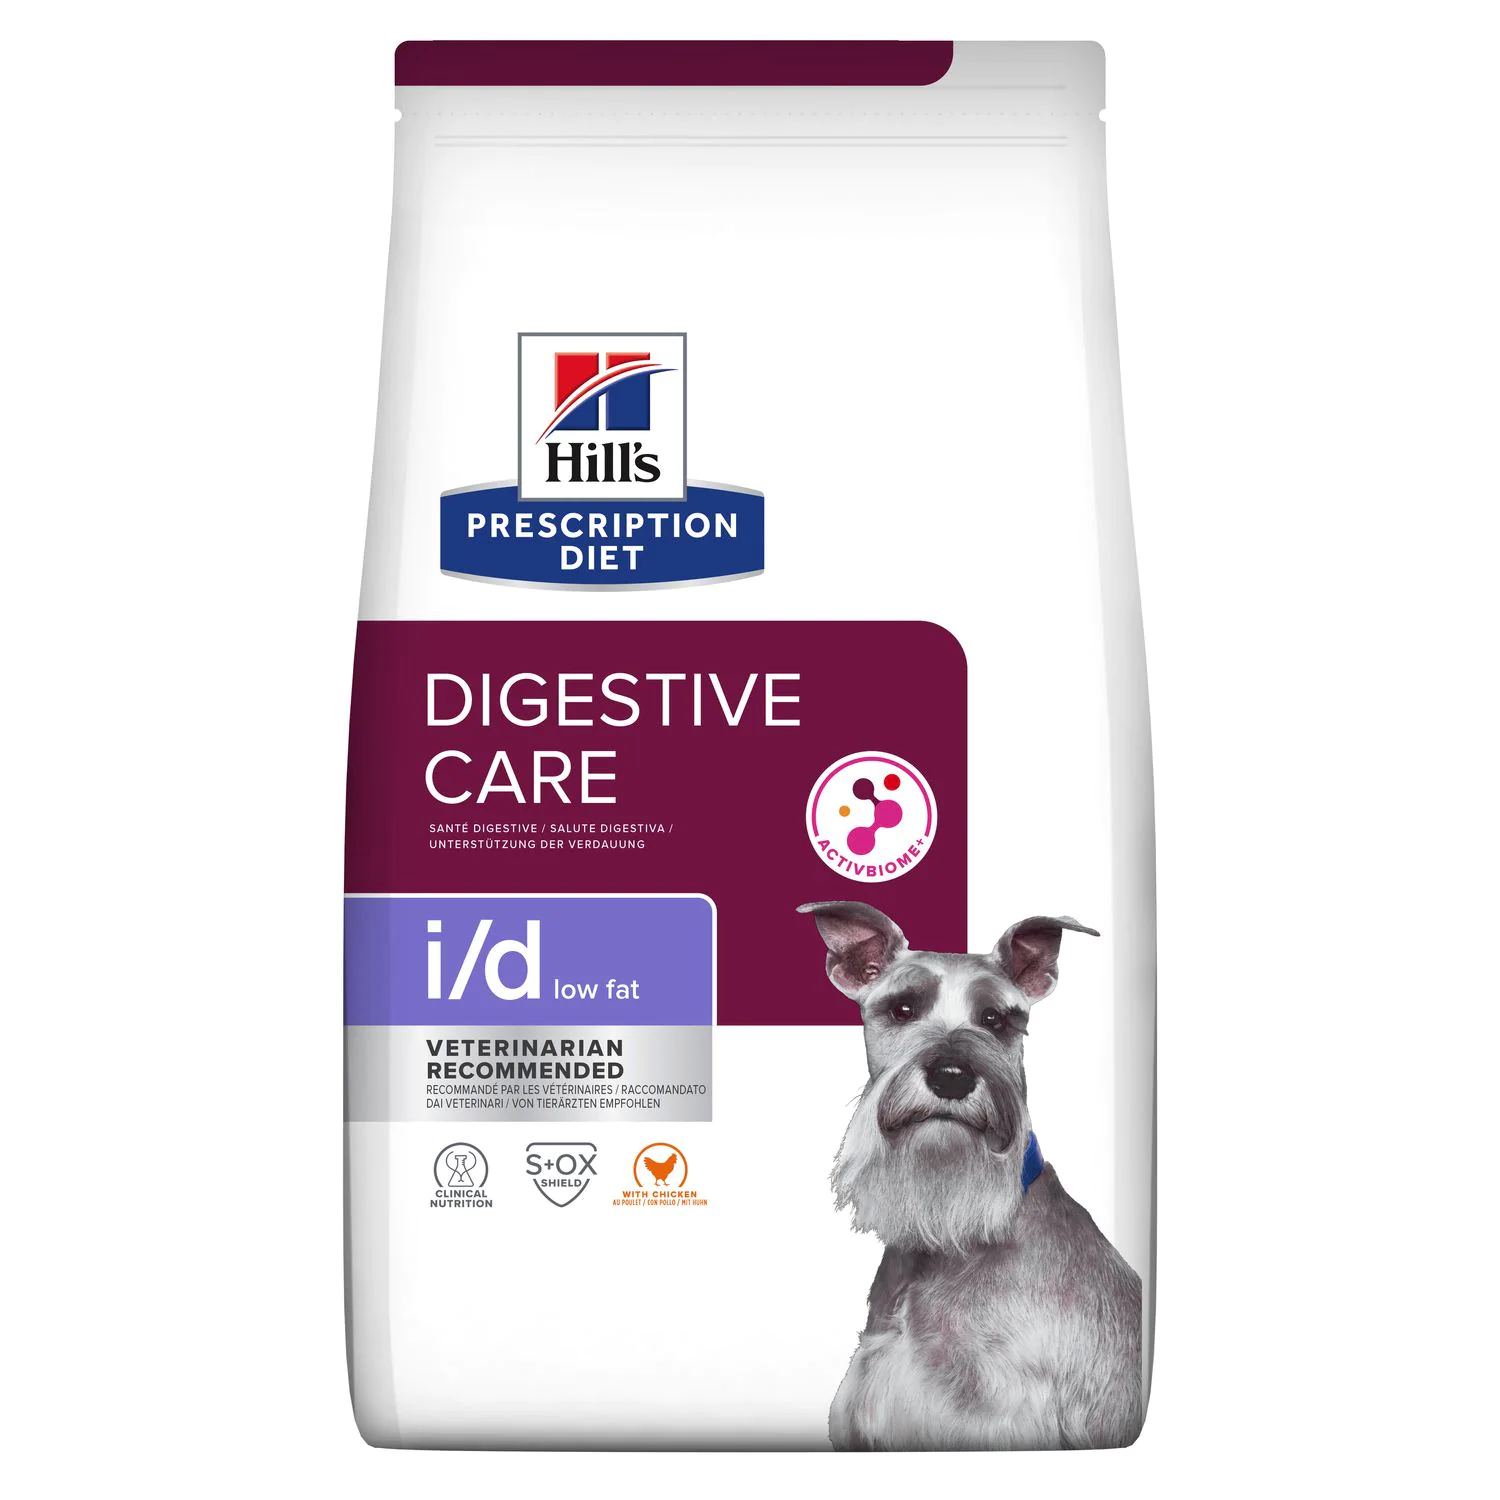 Ветеринарный сухой корм для собак Hill's (Хиллс) Prescription Diet i/d Low Fat Digestive Care, с курицей